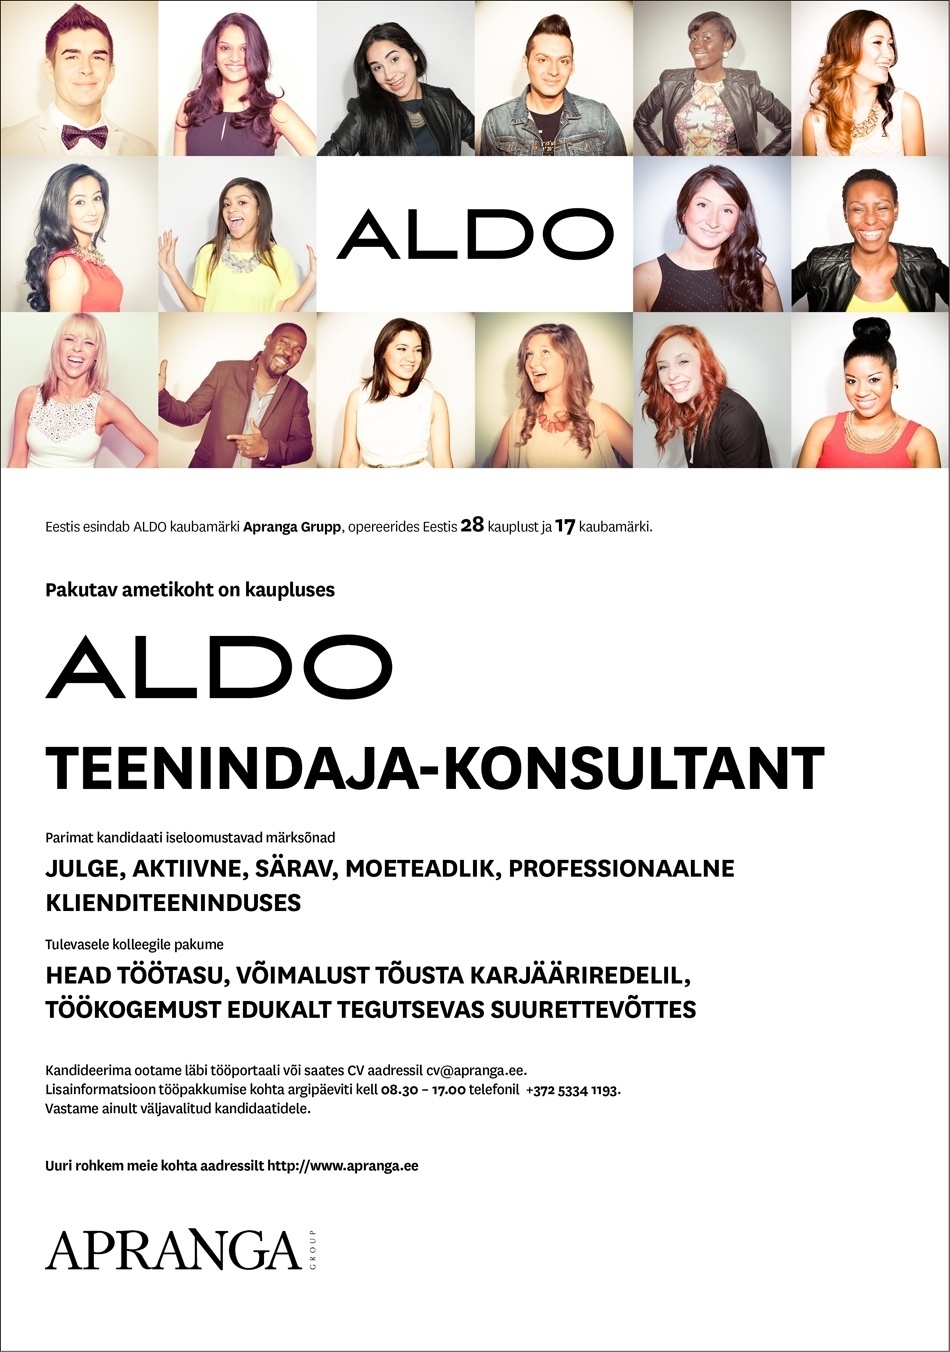 Apranga Estonia OÜ ALDO teenindaja-konsultant